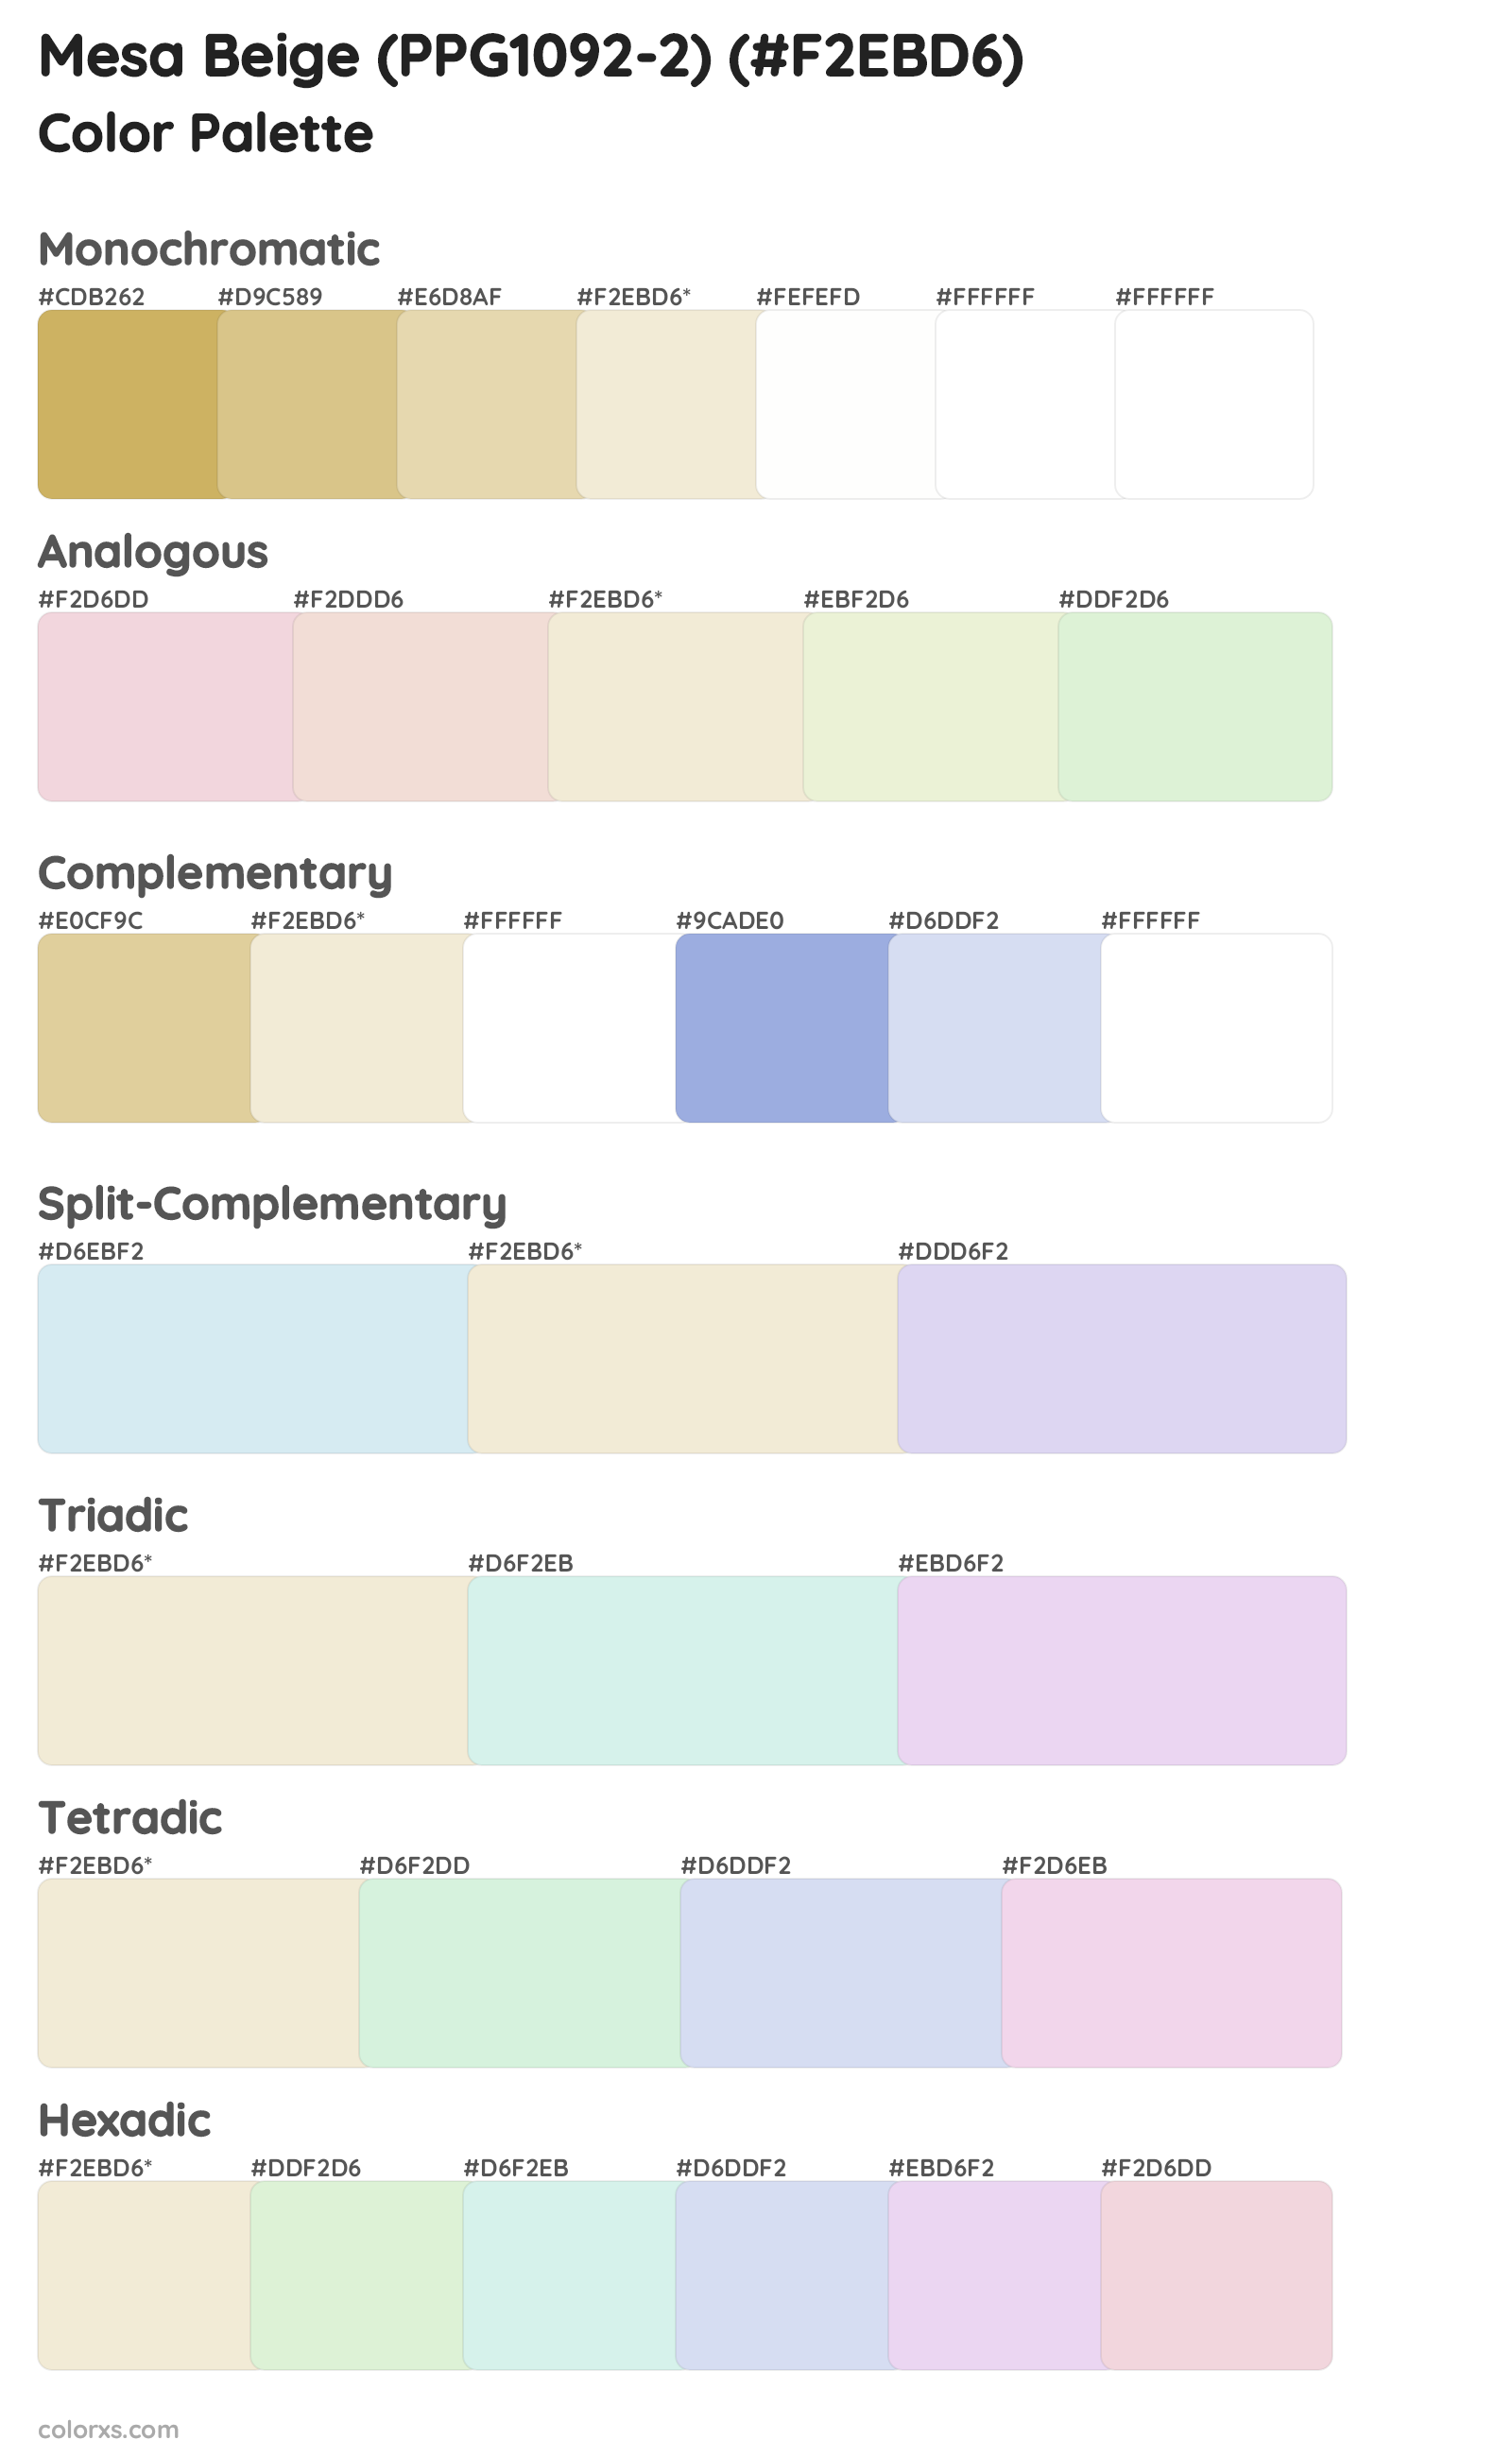 Mesa Beige (PPG1092-2) Color Scheme Palettes